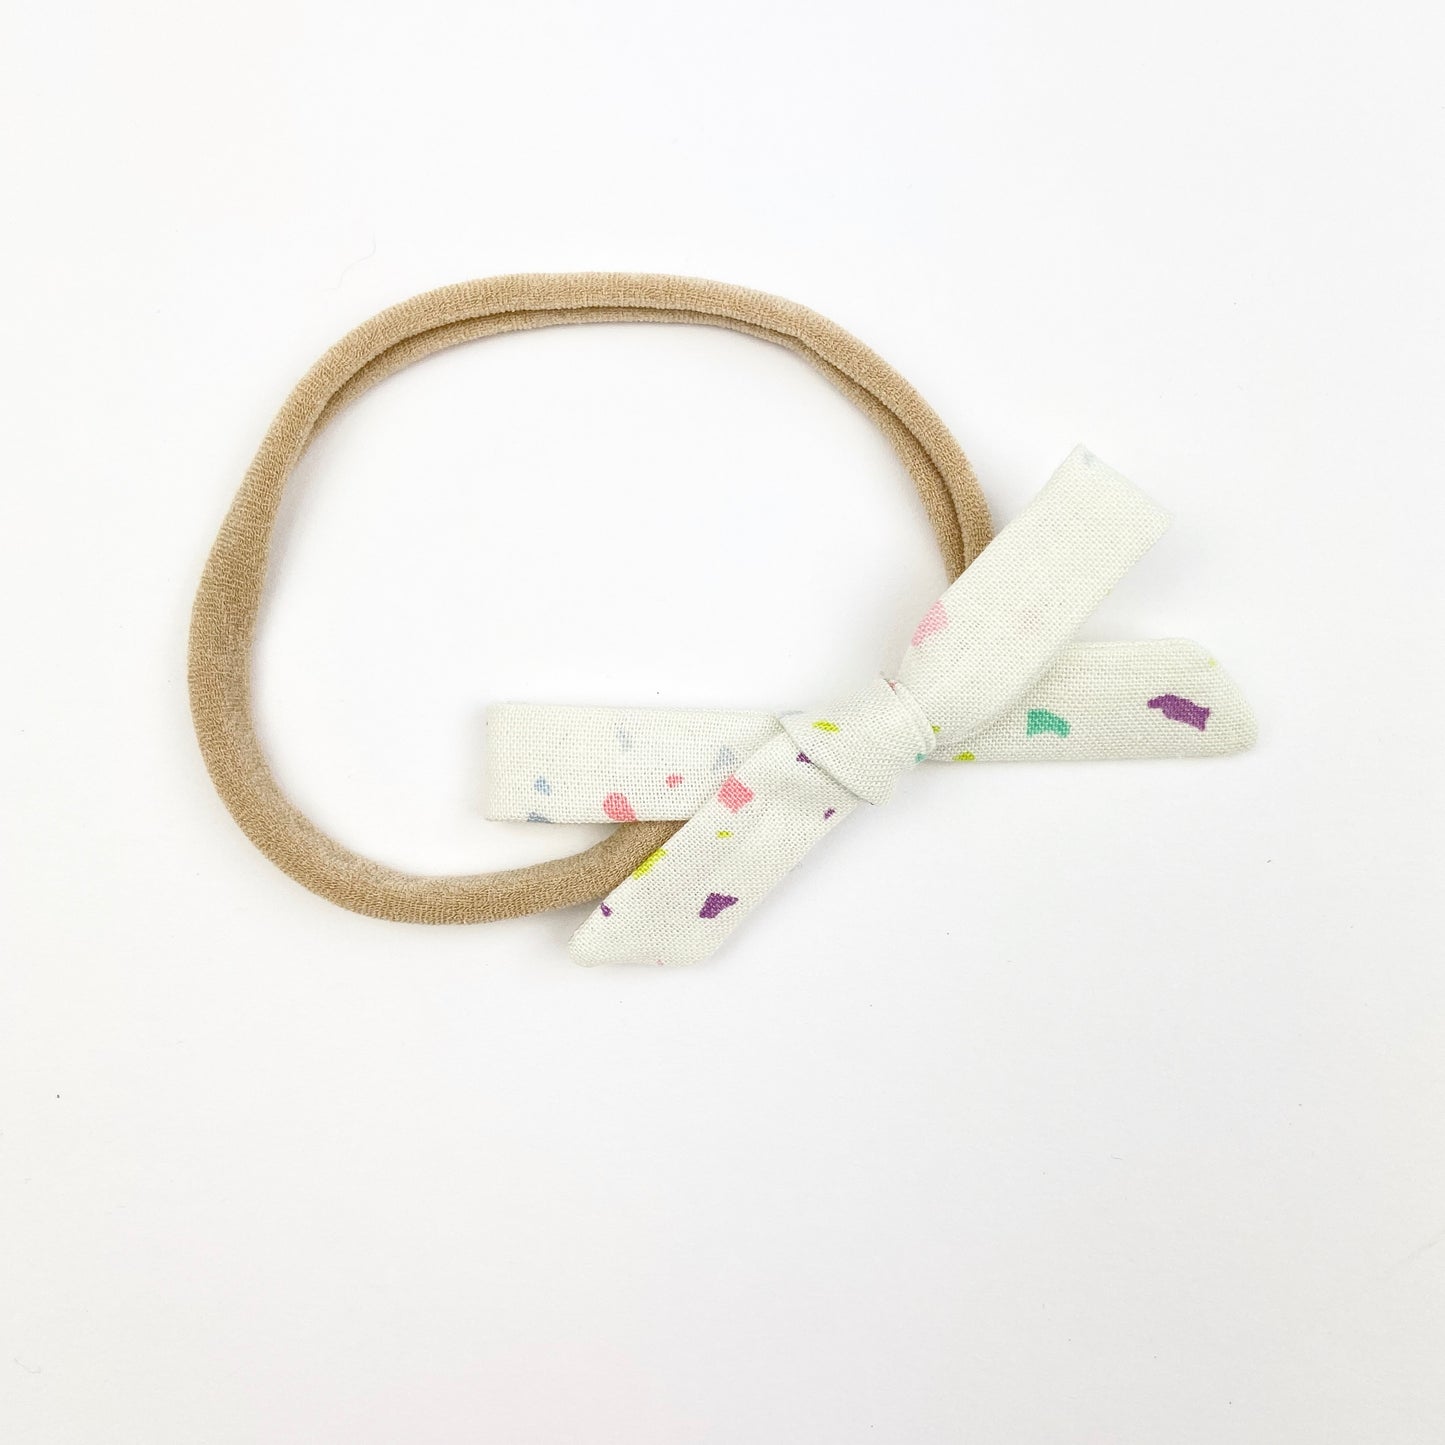 Confetti Orla Bow Headband - Emma Neale Handmade